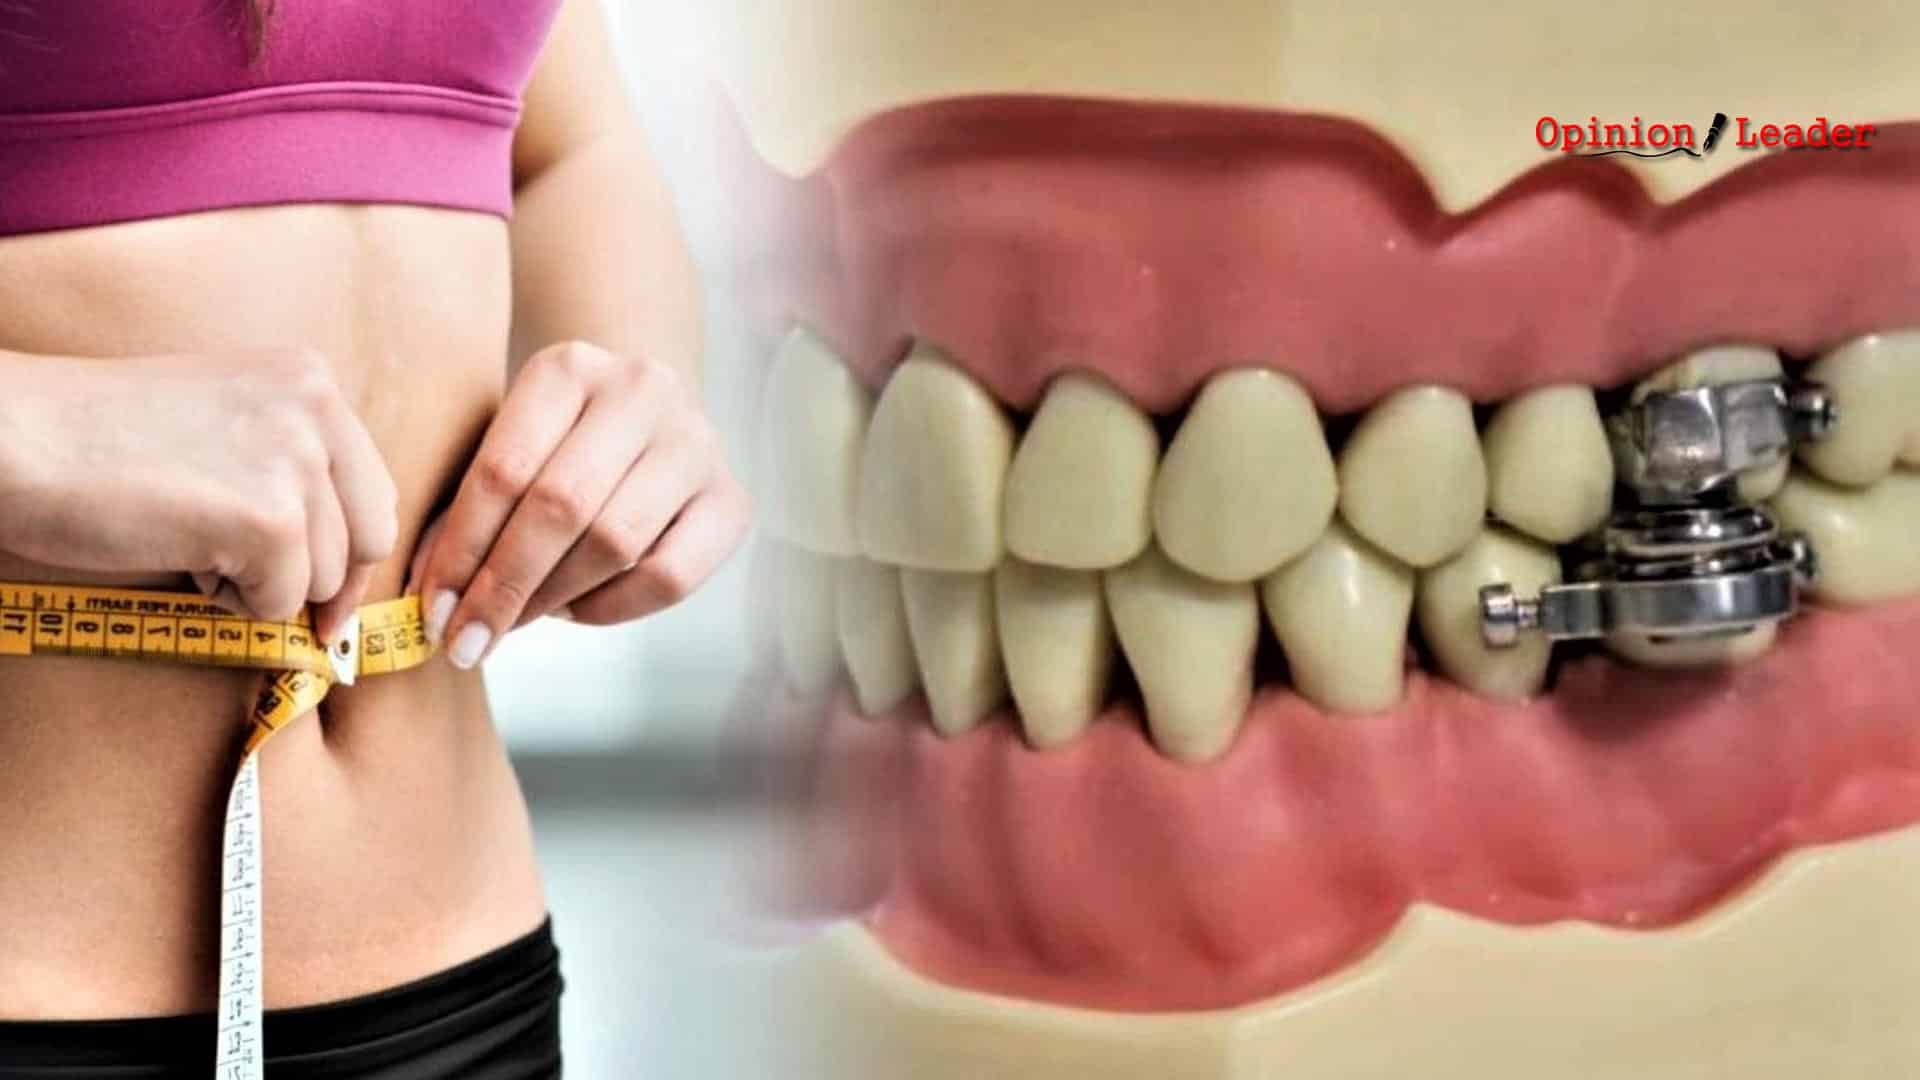 κλειδαριά στόμα - παχυσαρκία